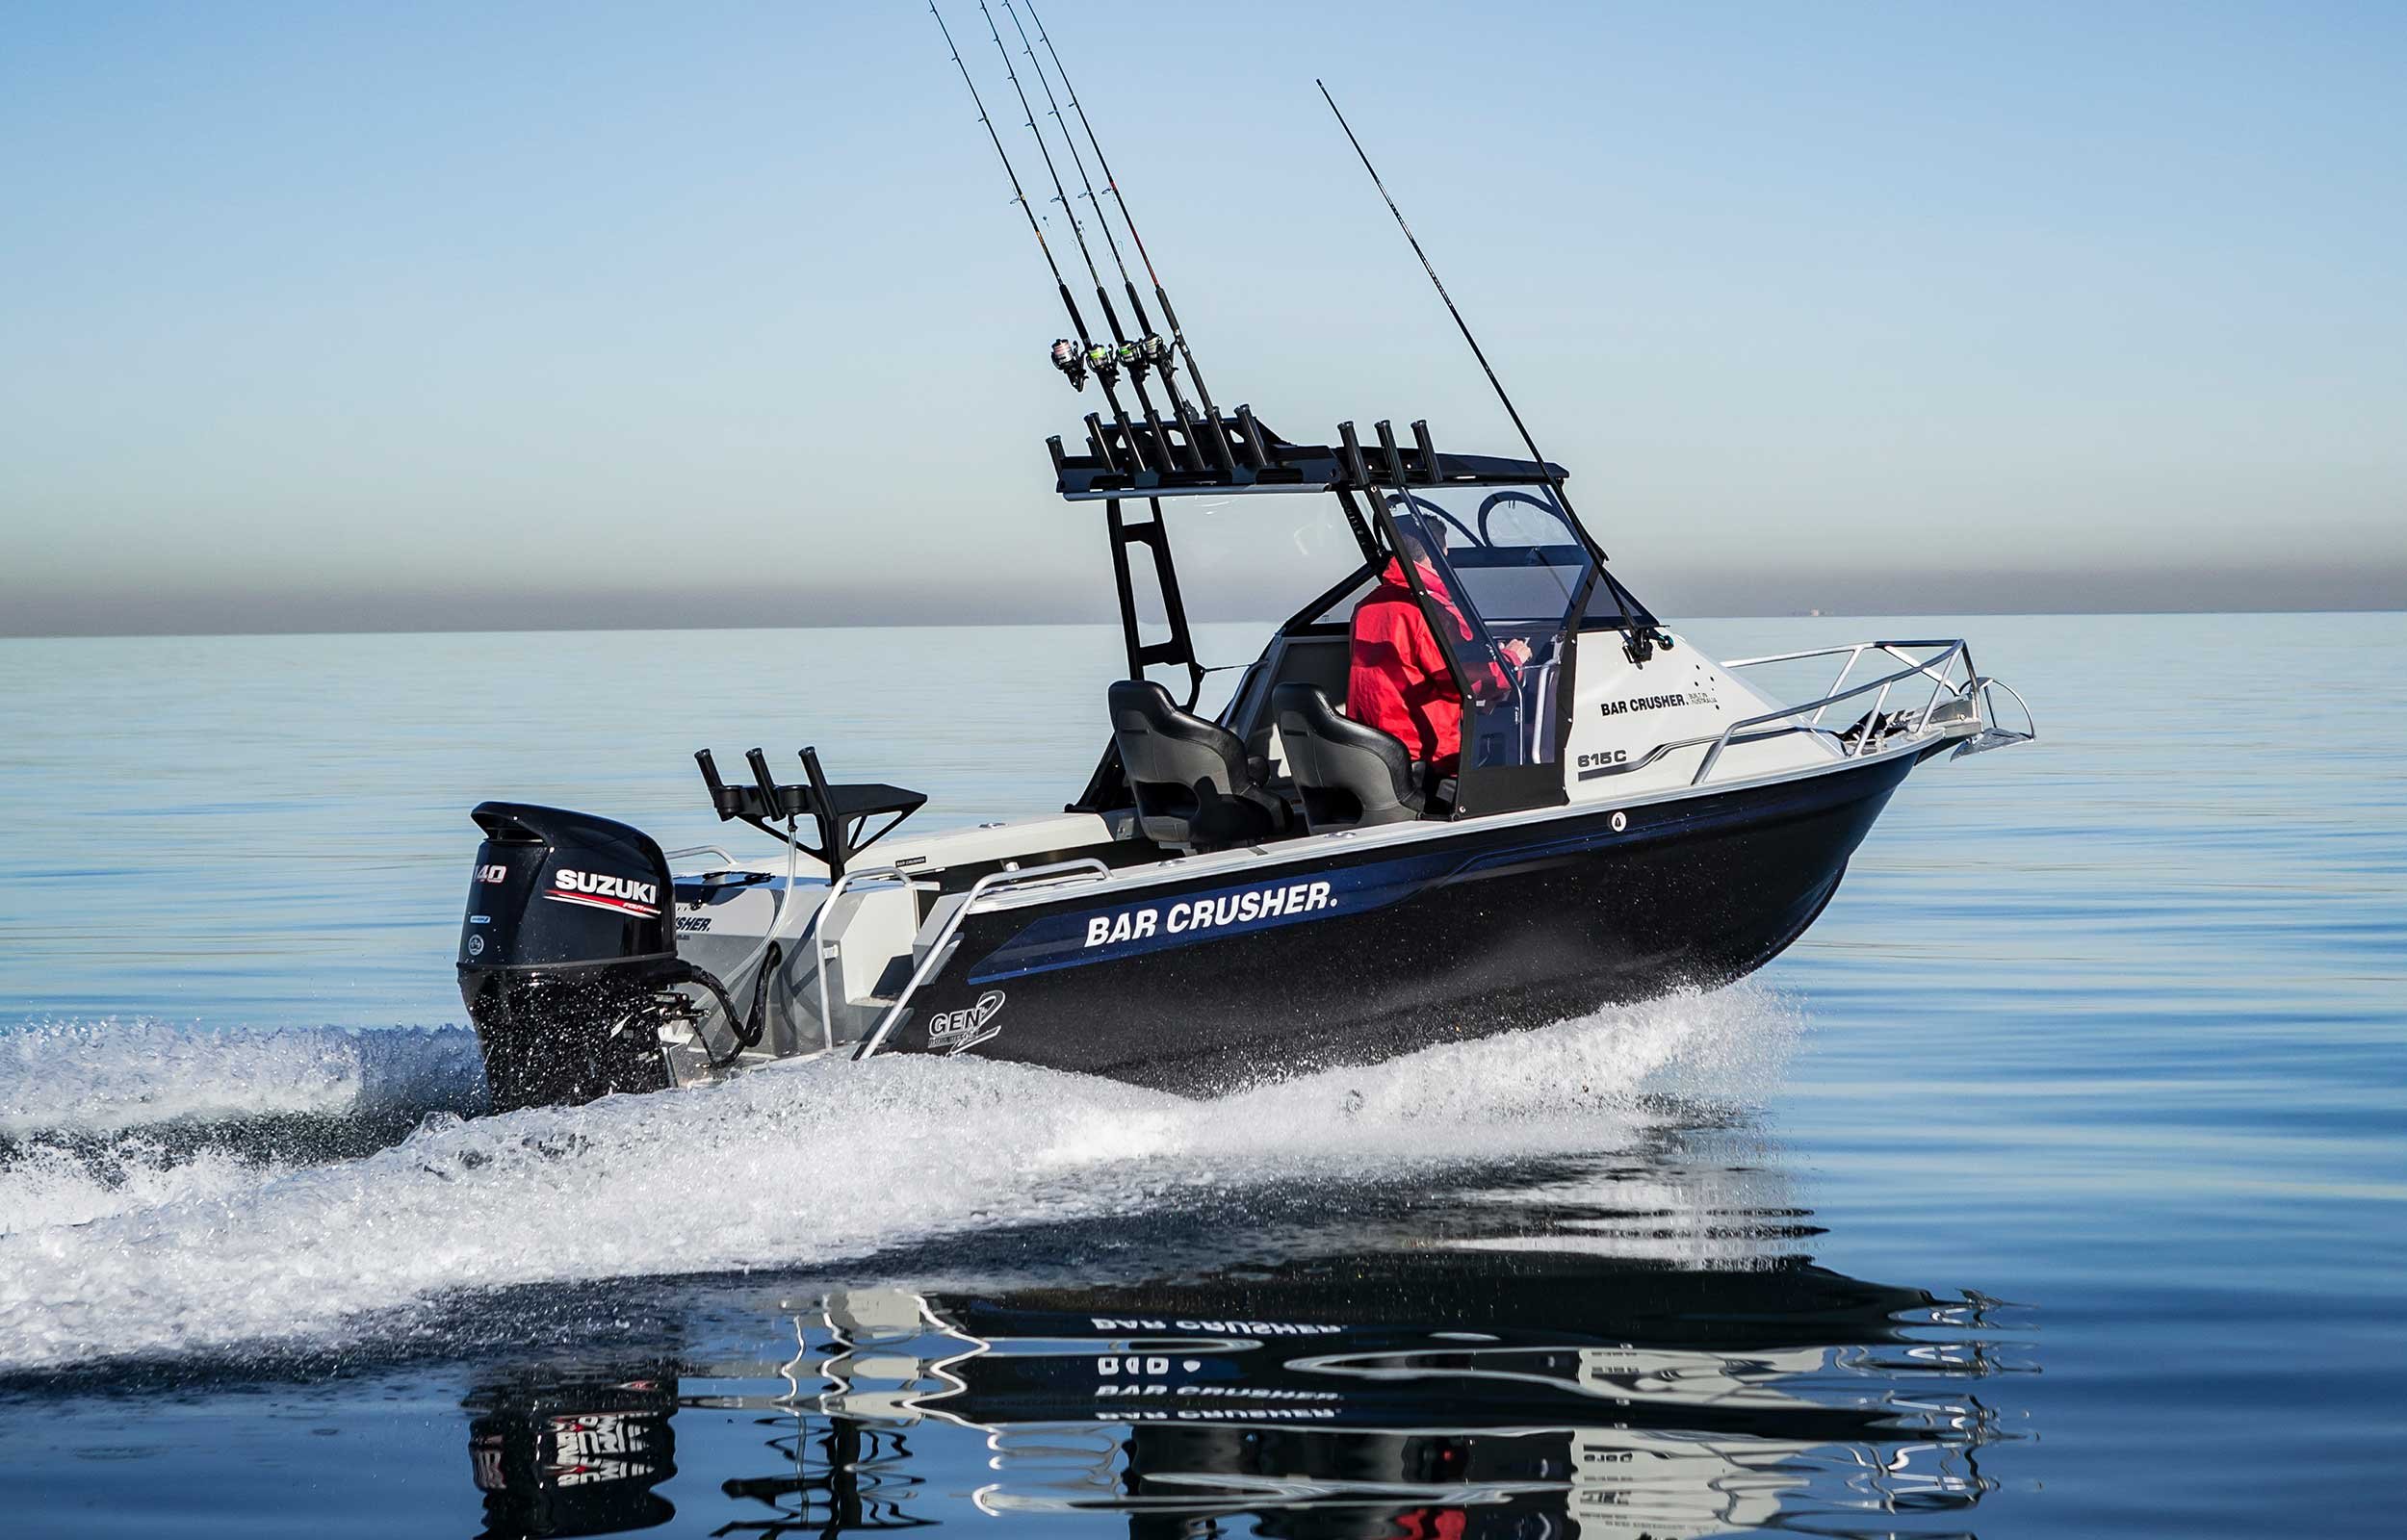 models-bar-crusher-615c-plate-aluminium-fishing-boat-2019-web-7